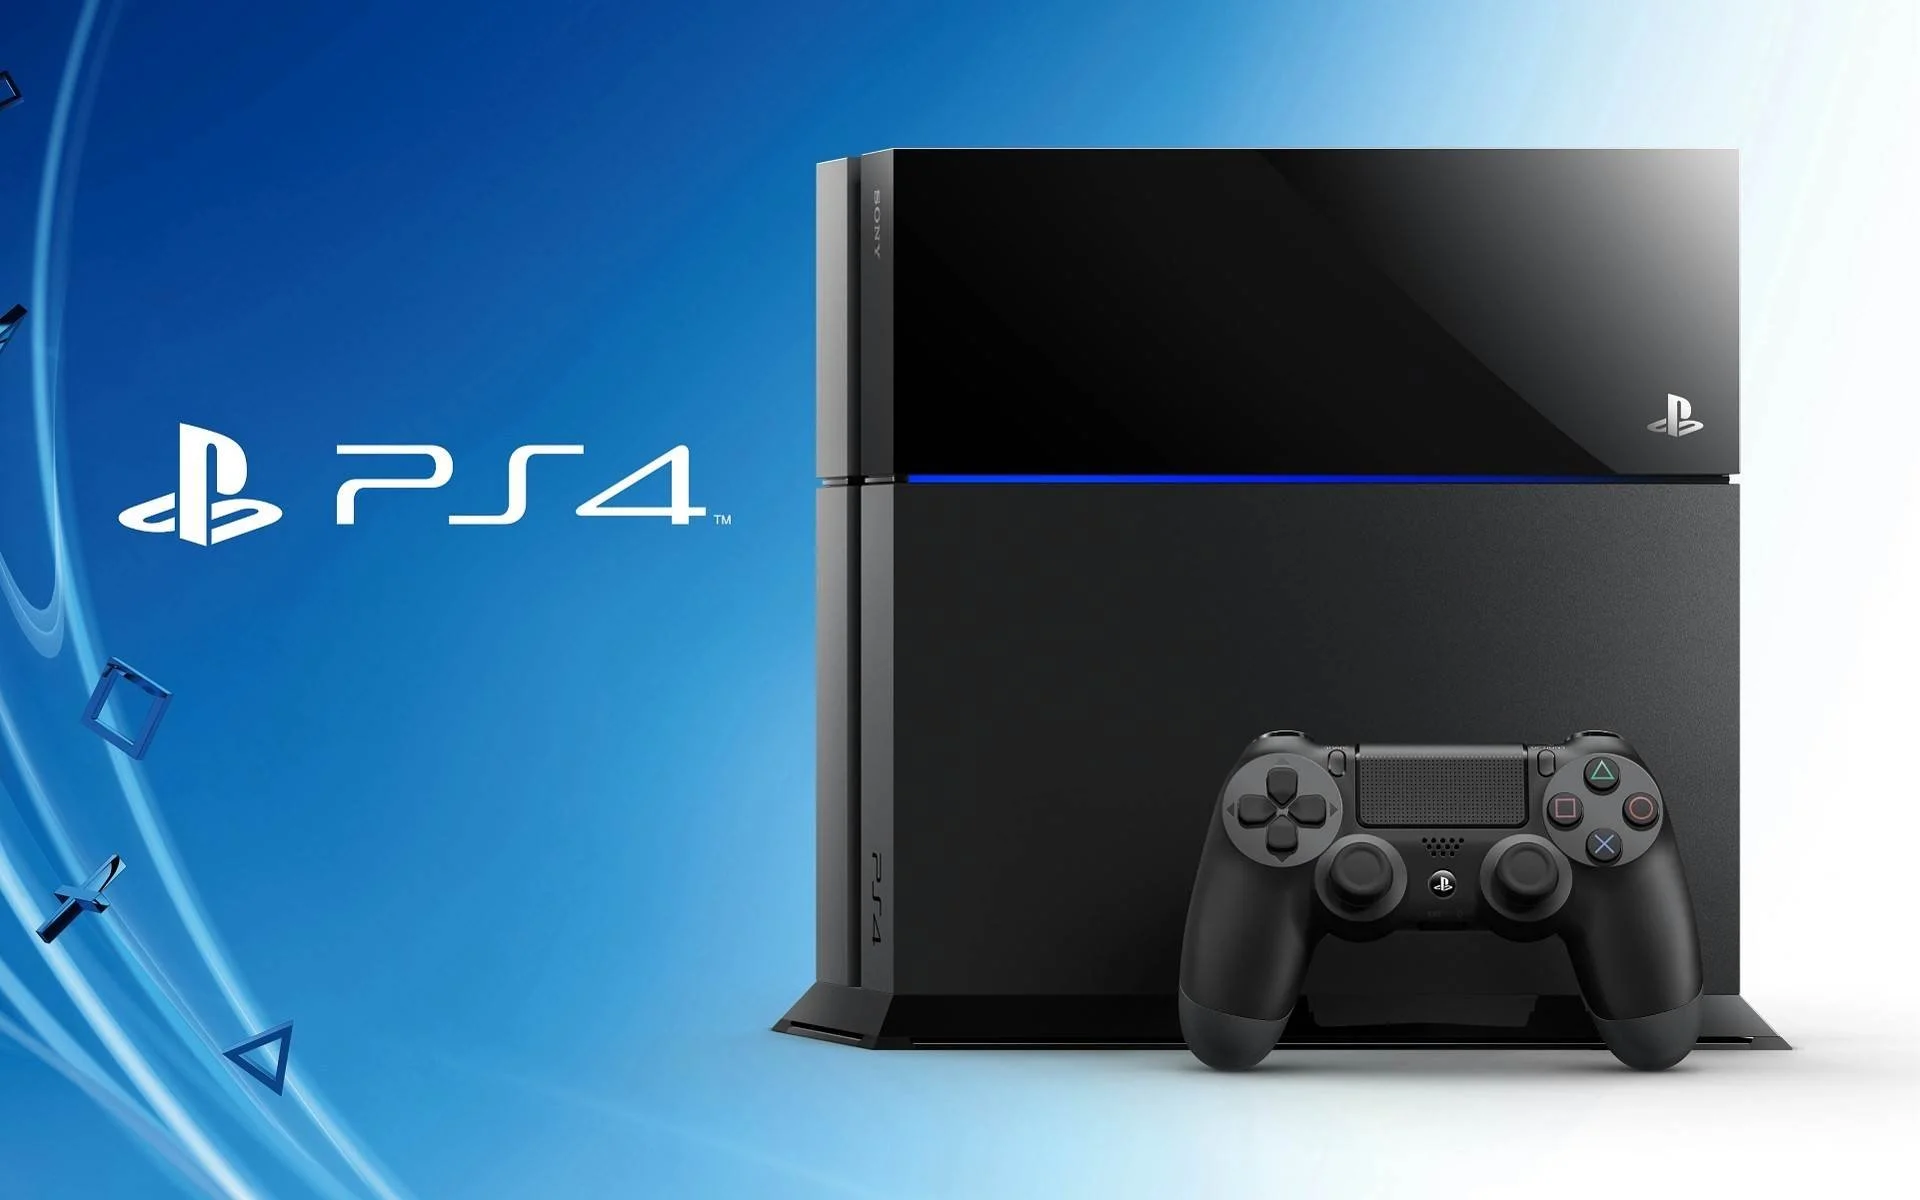 Компания Sony на выставке Gamescom 2013 сделала сразу несколько важных заявлений относительно игровой консоли нового поколения PlayStation 4. Мы собрали их вместе и составили своеобразный рекомендационный лист по самой ожидаемой приставке этого года.